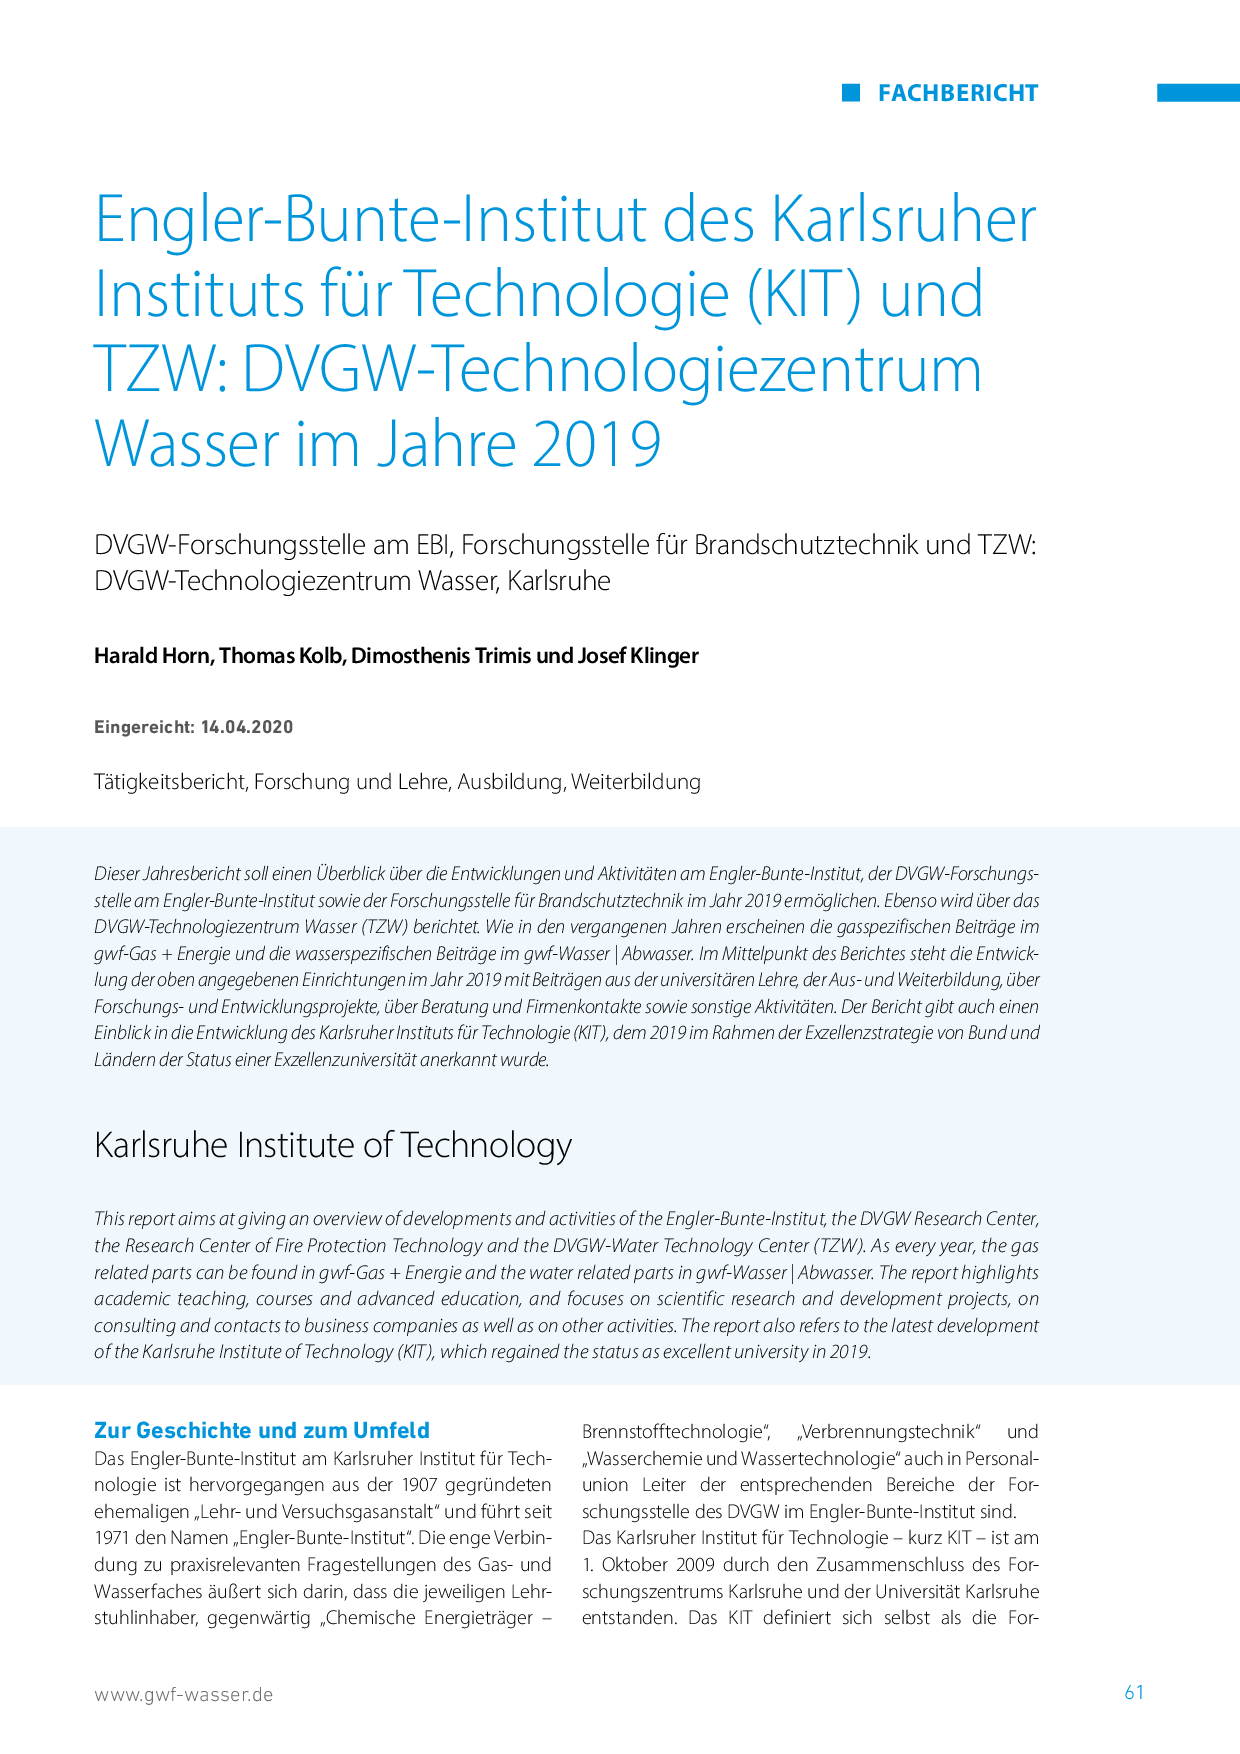 Engler-Bunte-Institut des Karlsruher Instituts für Technologie (KIT) und TZW: DVGW-Technologiezentrum Wasser im Jahre 2019